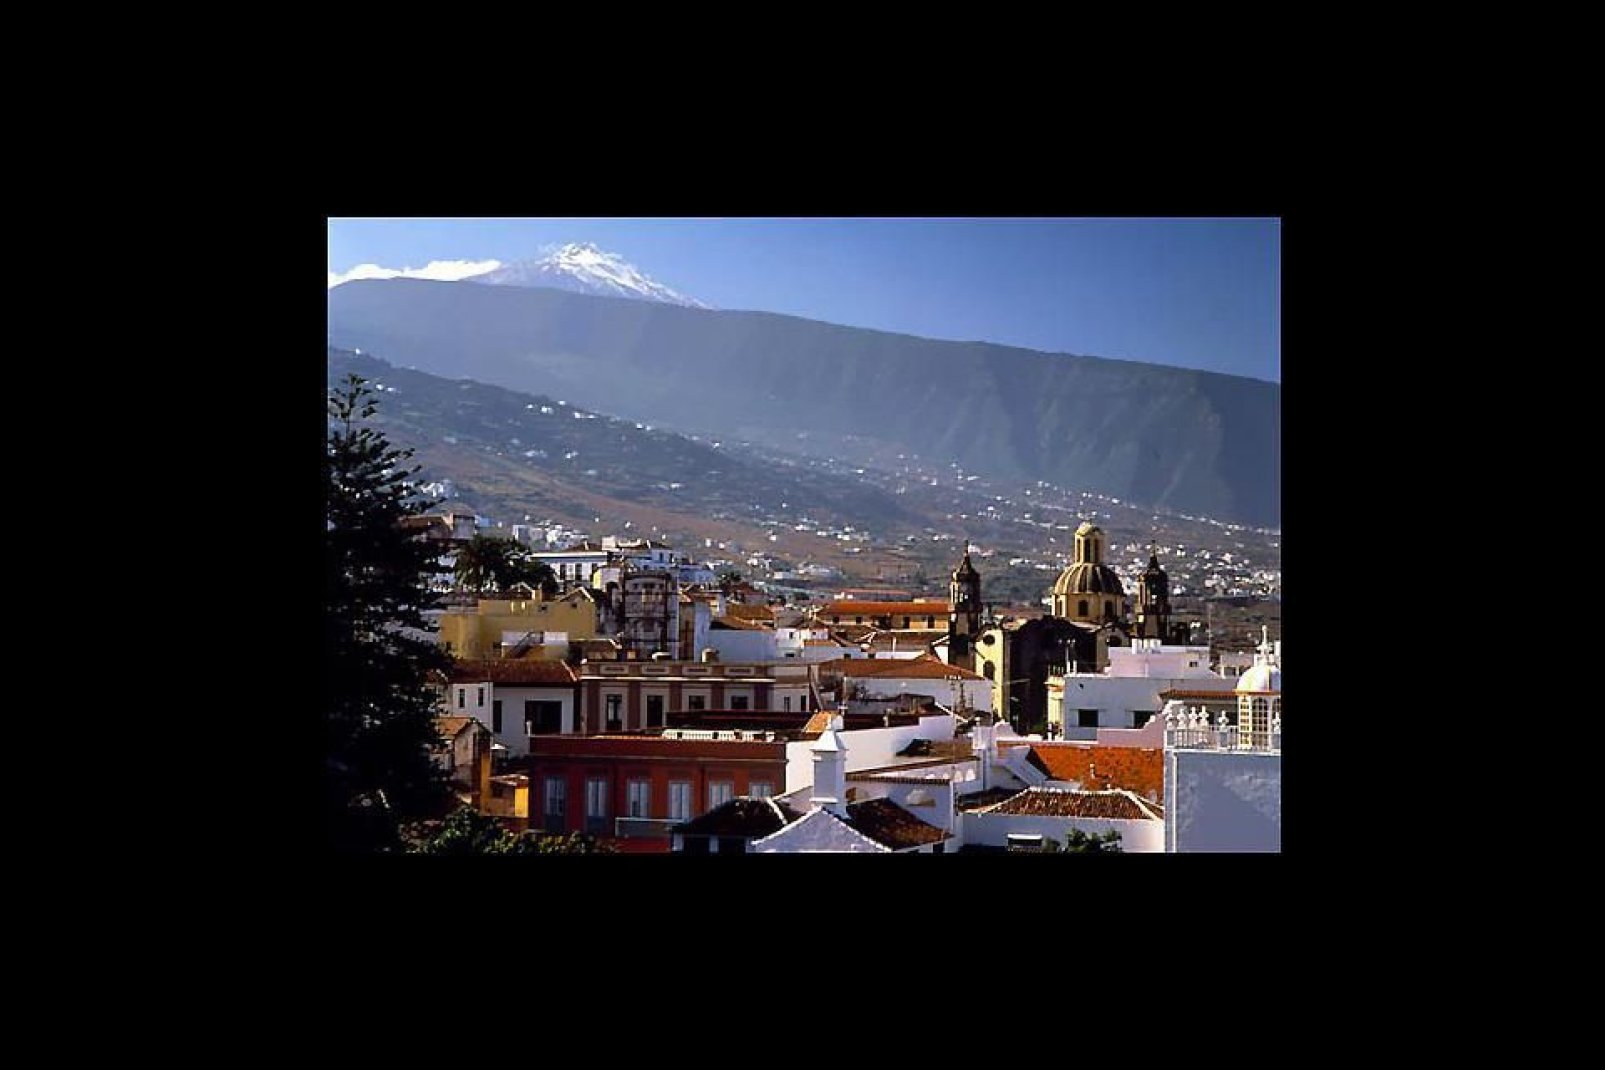 La ville de La Orotava se situe dans la vallée fertile du même nom. Autrefois capitale du pays guanche, elle se révèle l'une des plus belles villes de Tenerife.